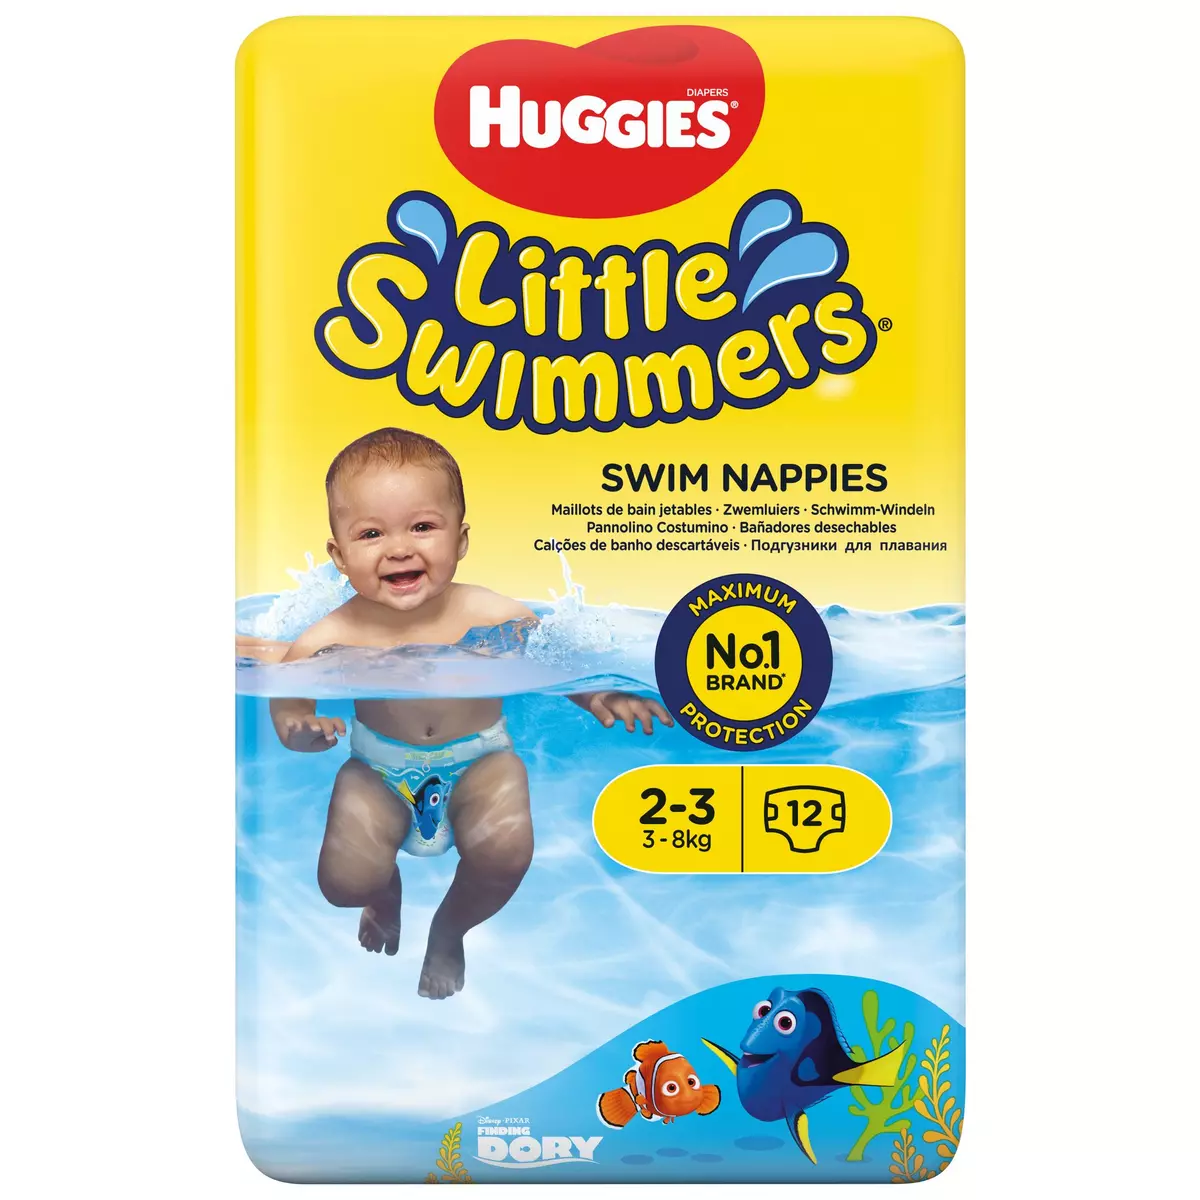 Couche de piscine bébé : Little Swimmers